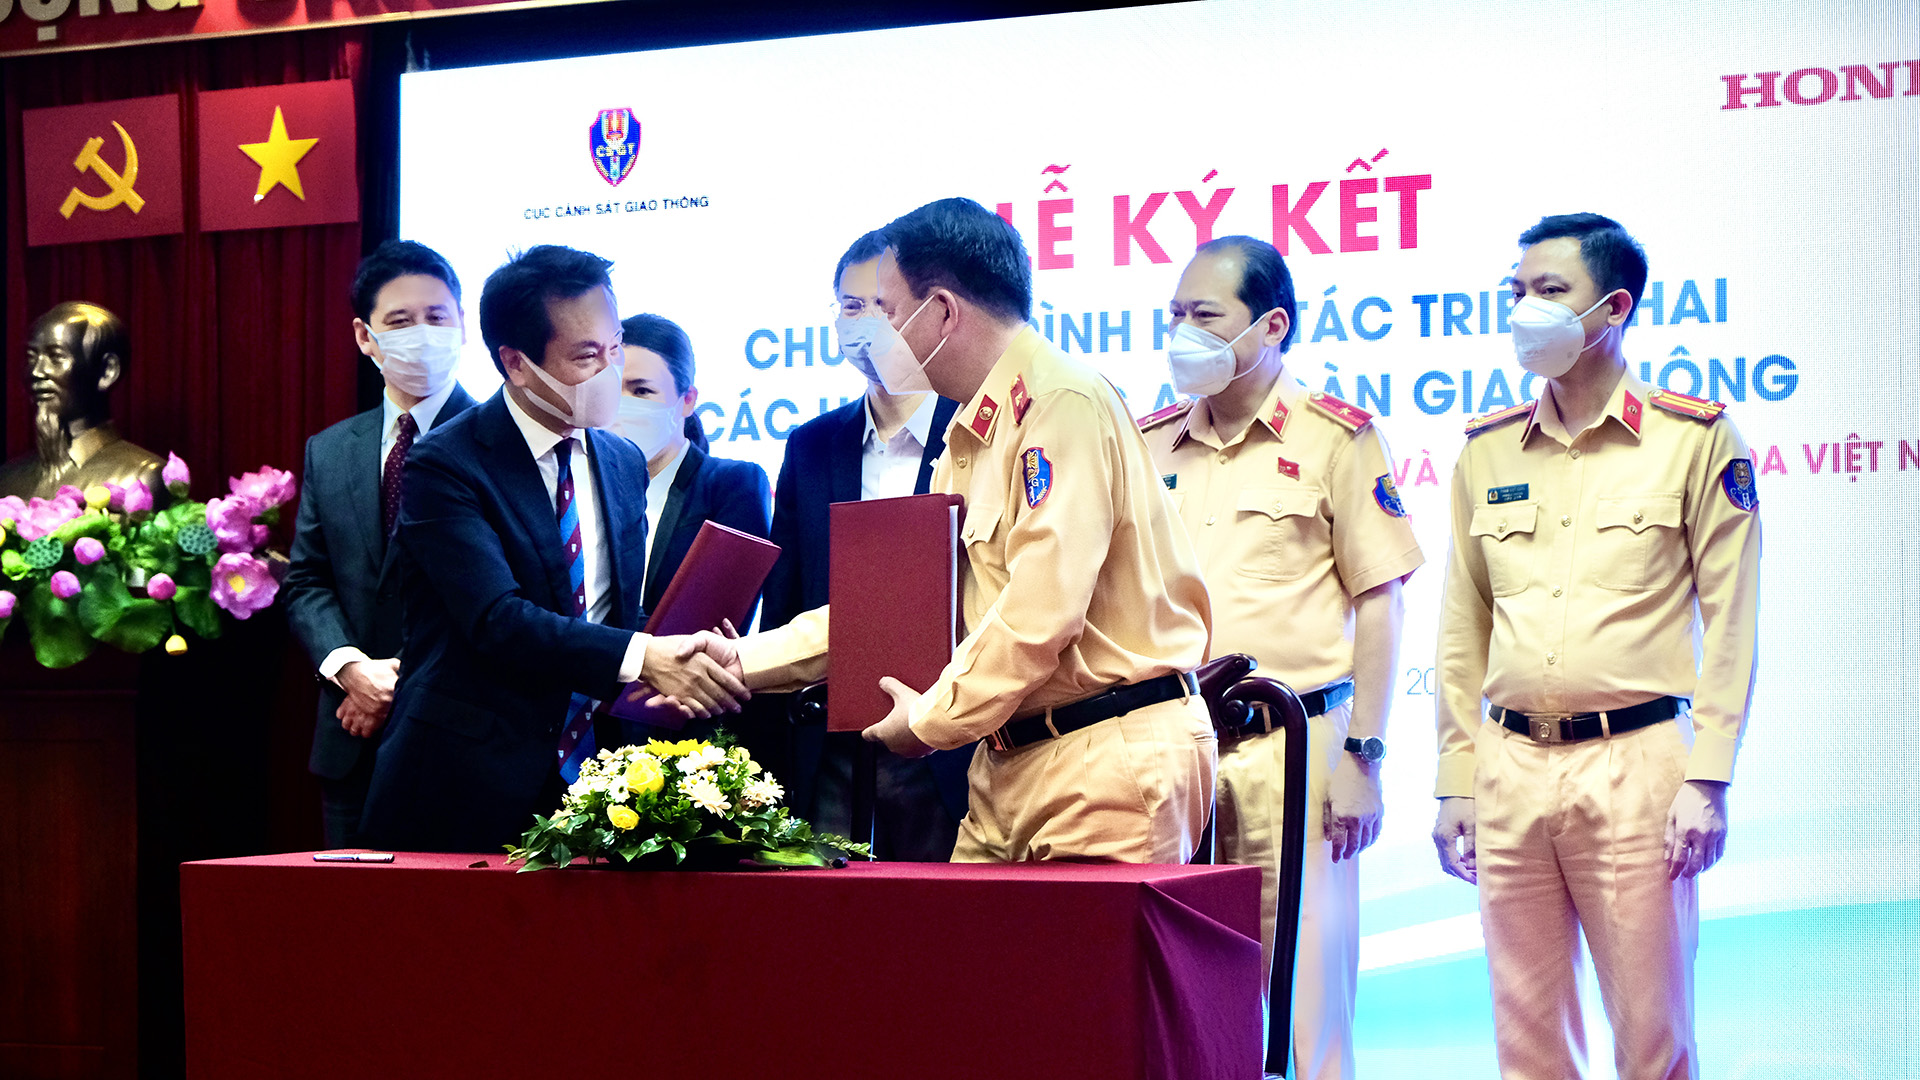 Honda Việt Nam và Cục Cảnh sát giao thông ký kết Thỏa thuận chương trình hợp tác triển khai các hoạt động về ATGT giai đoạn 2022 - 2024